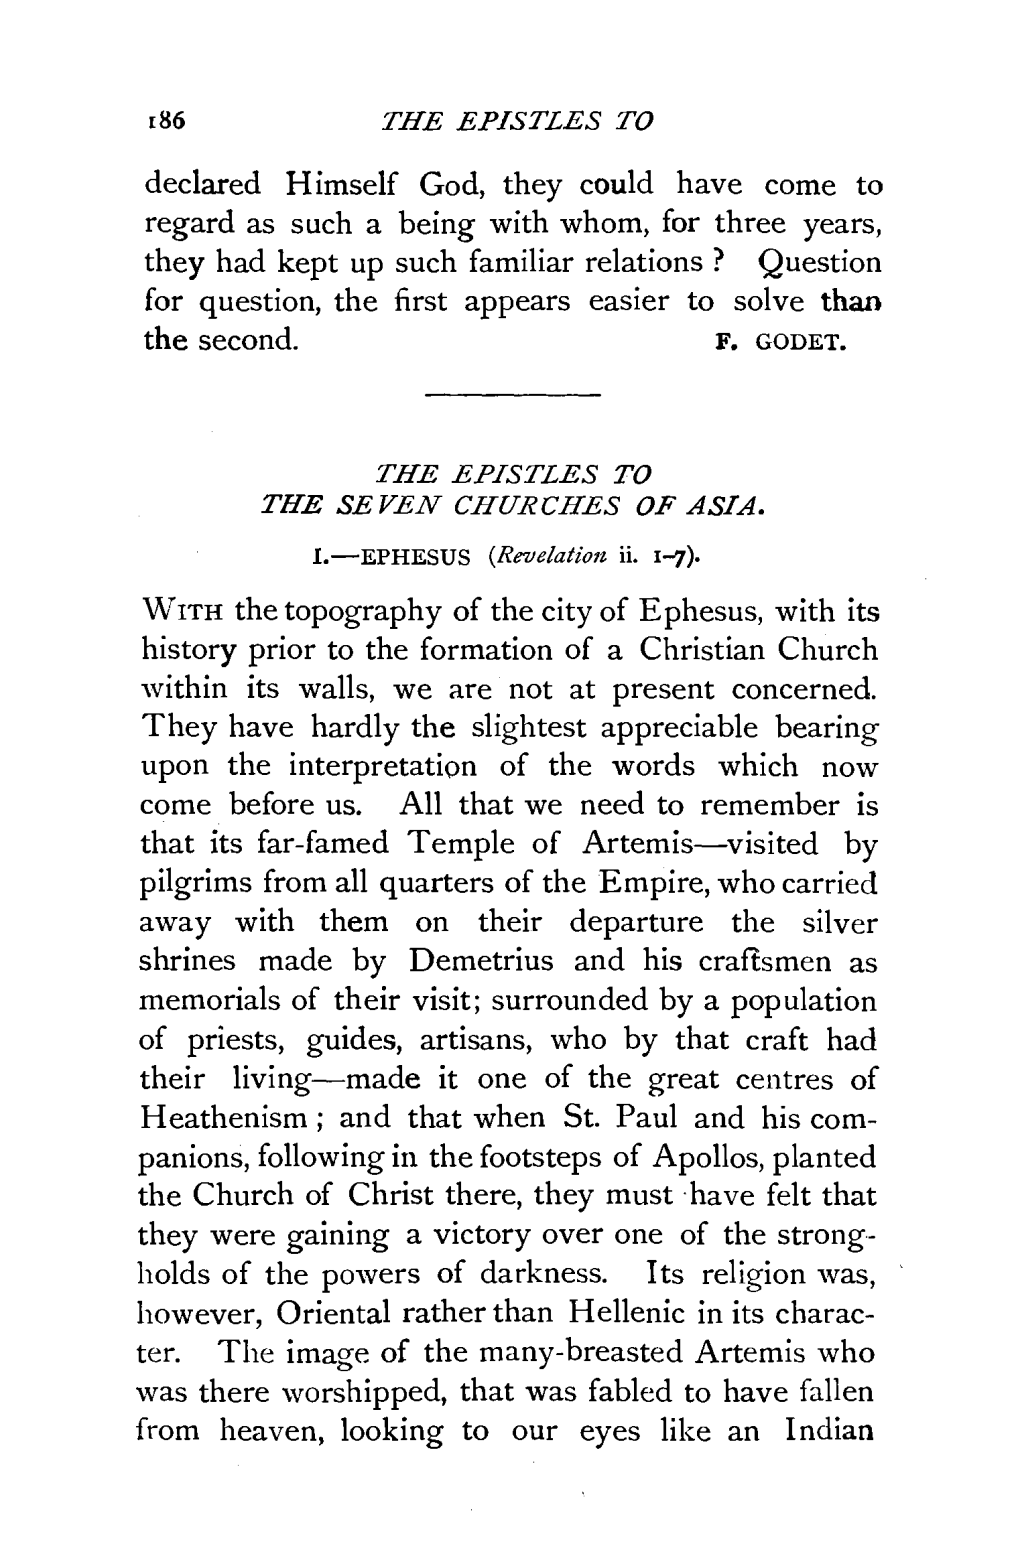 The Epistles to the Seven Churches of Asia. I. Ephesus (Revelation Ii